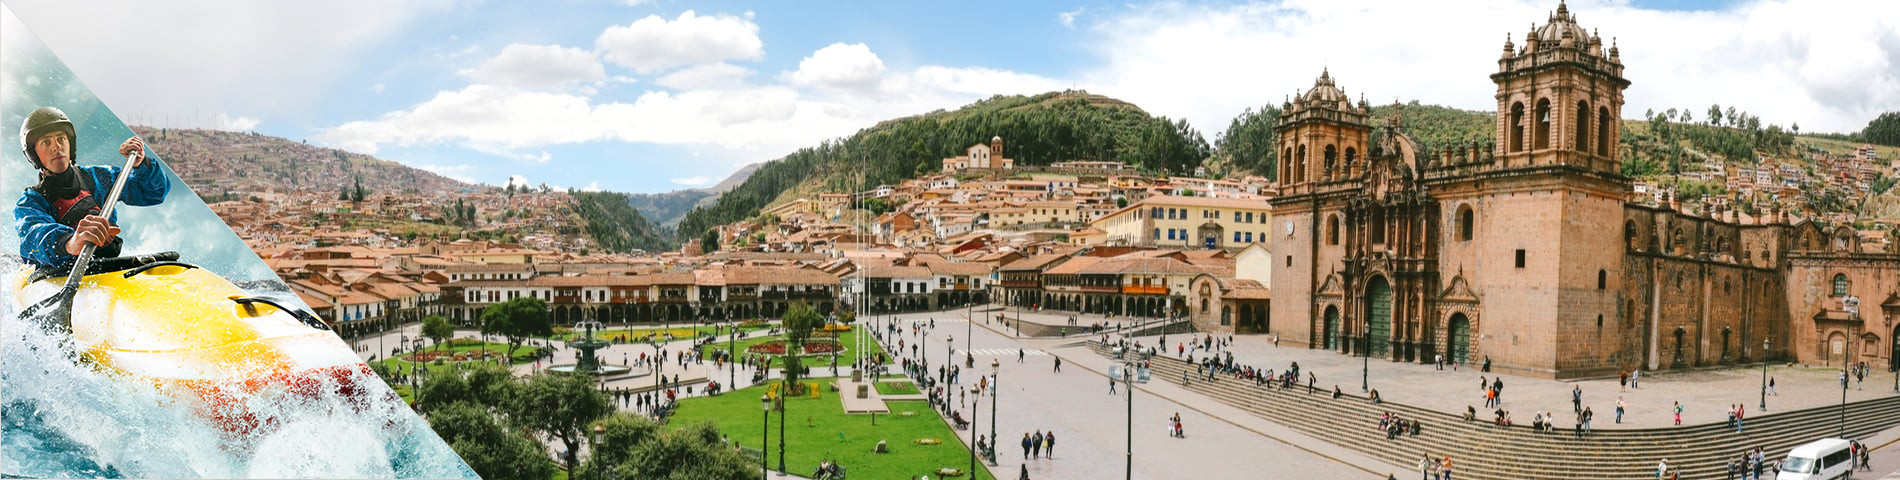 Cuzco - Espanhol & Esportes de Aventura